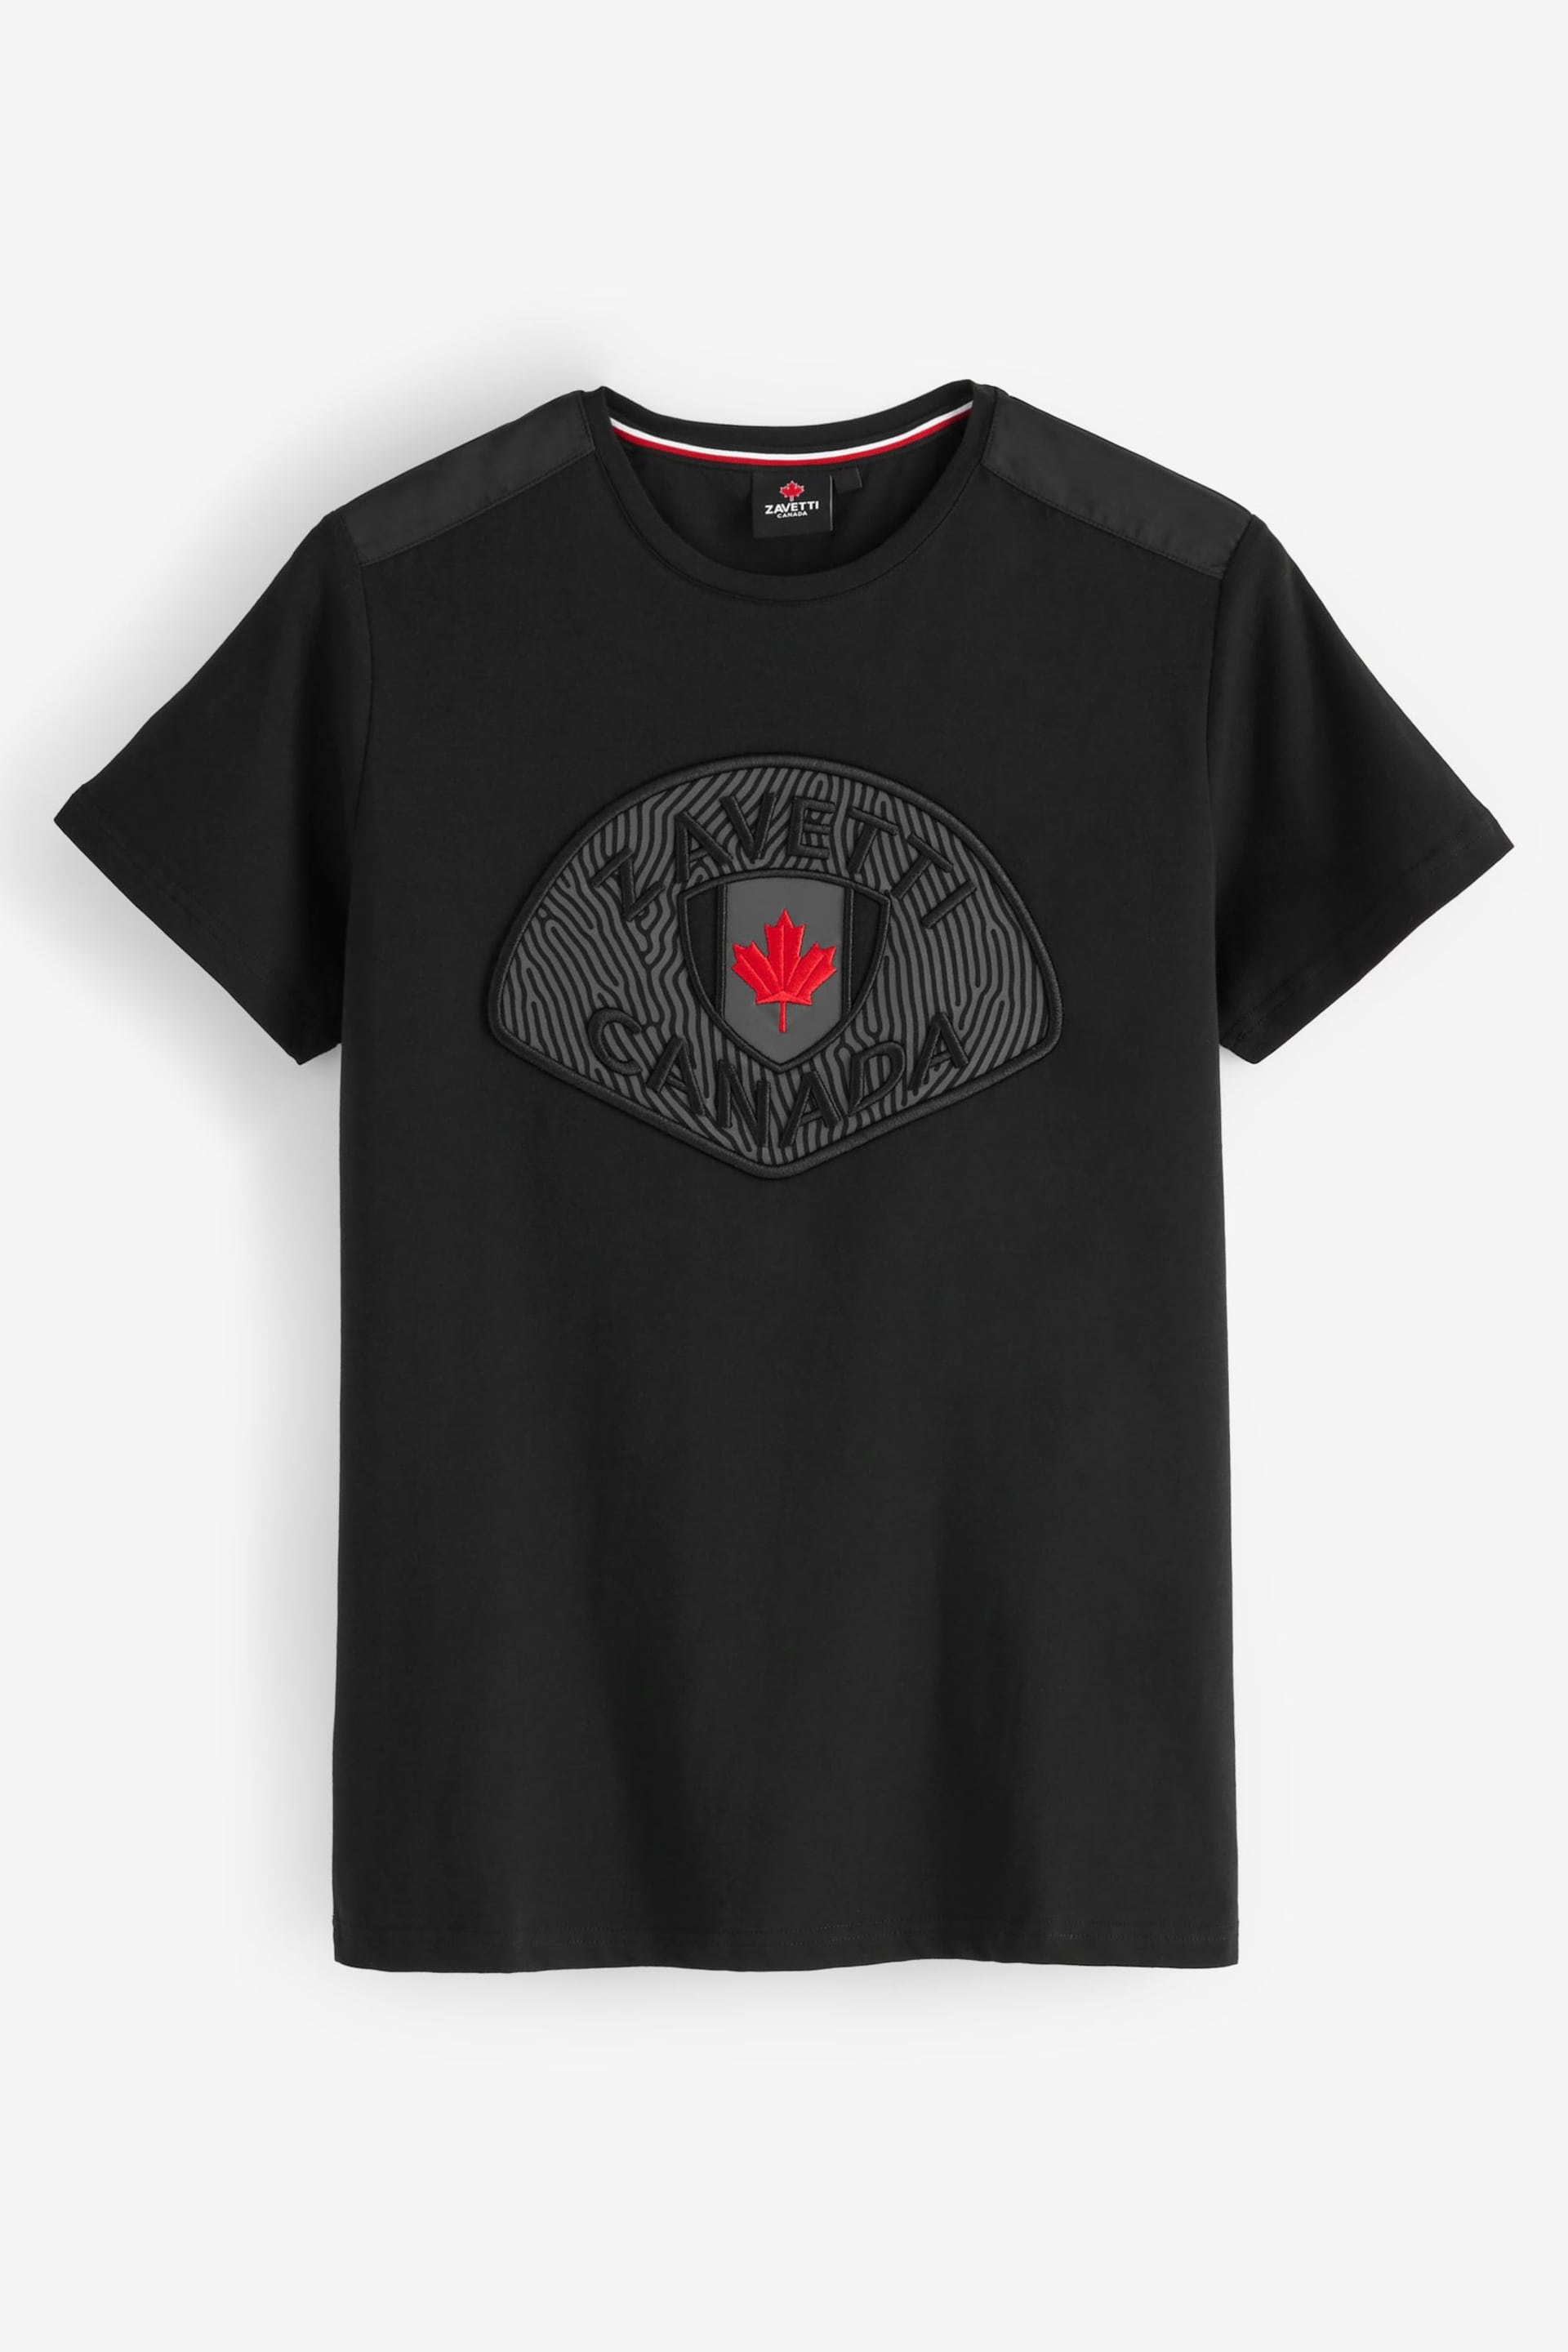 Zavetti Canada Black Levito T-Shirt - Image 6 of 6